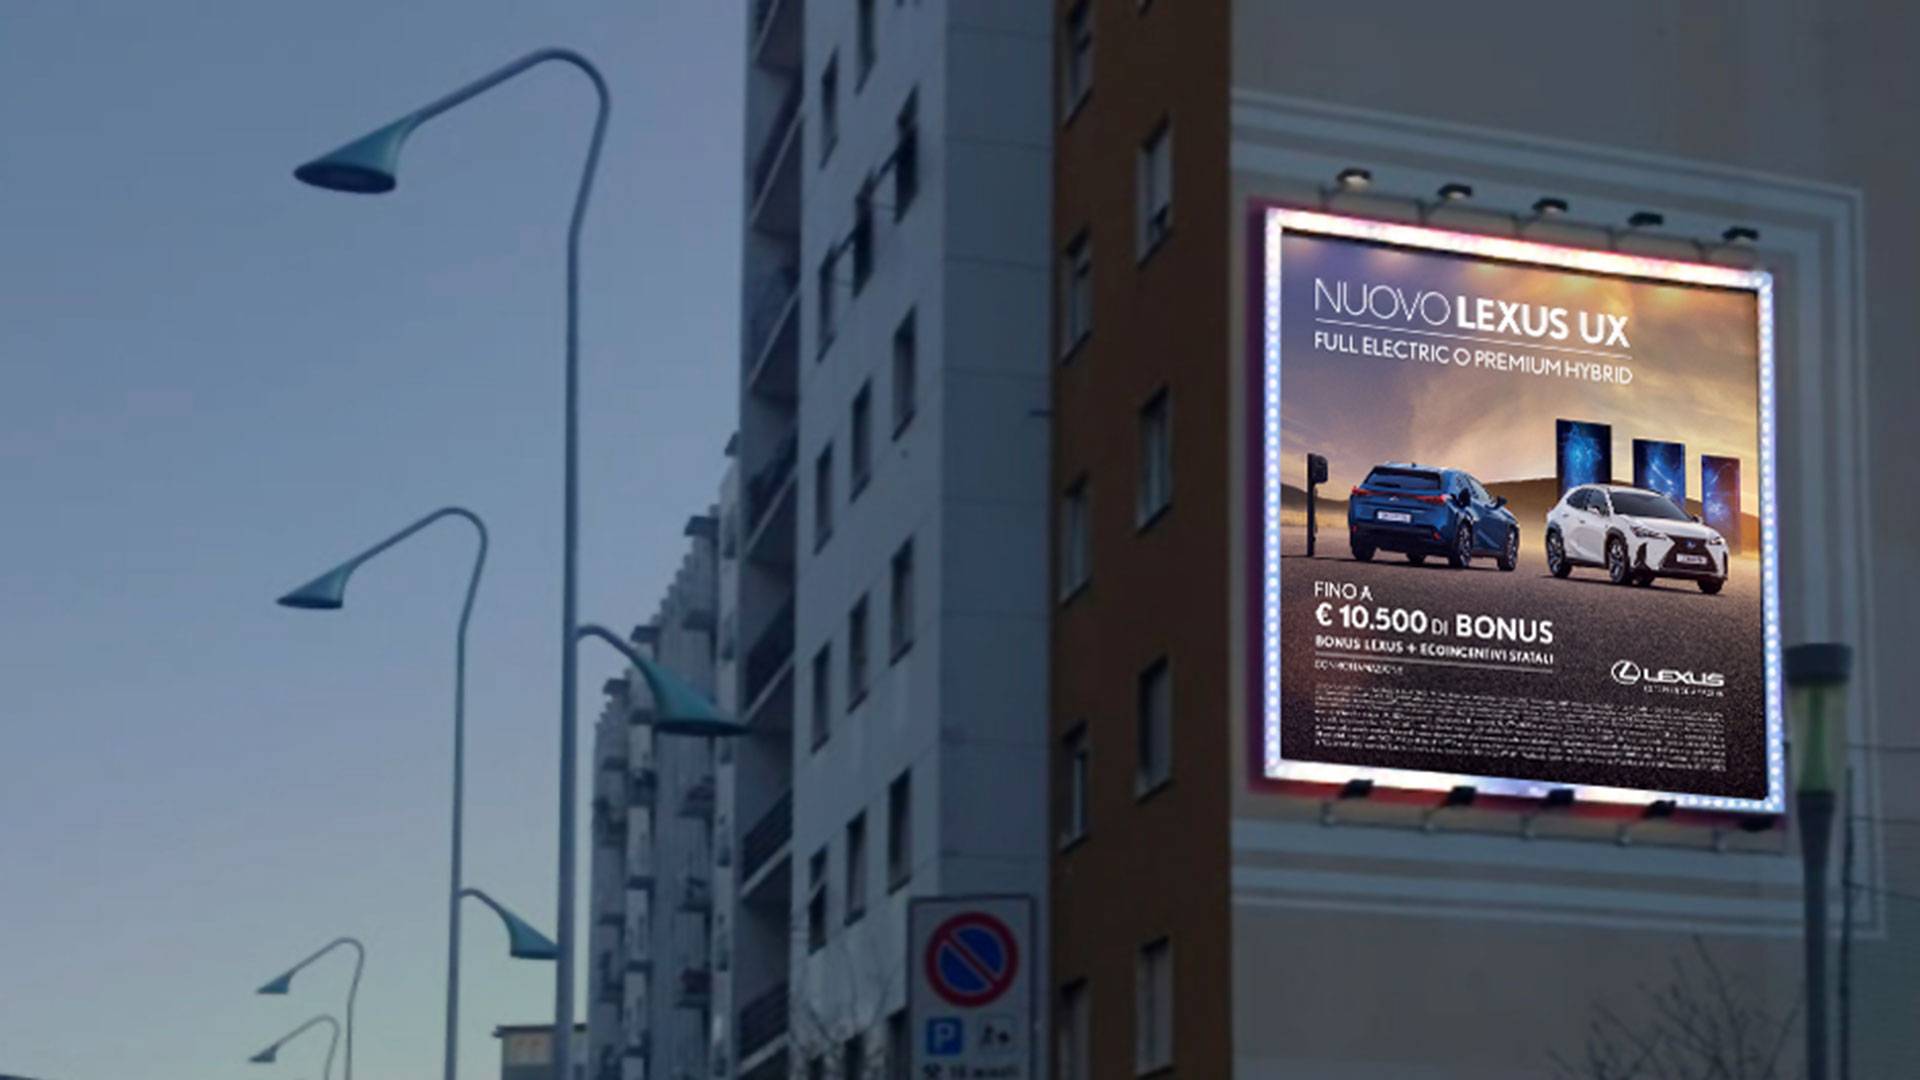 Spazi pubblicitari Brescia Maxi OOH pubblicità fiancata palazzo